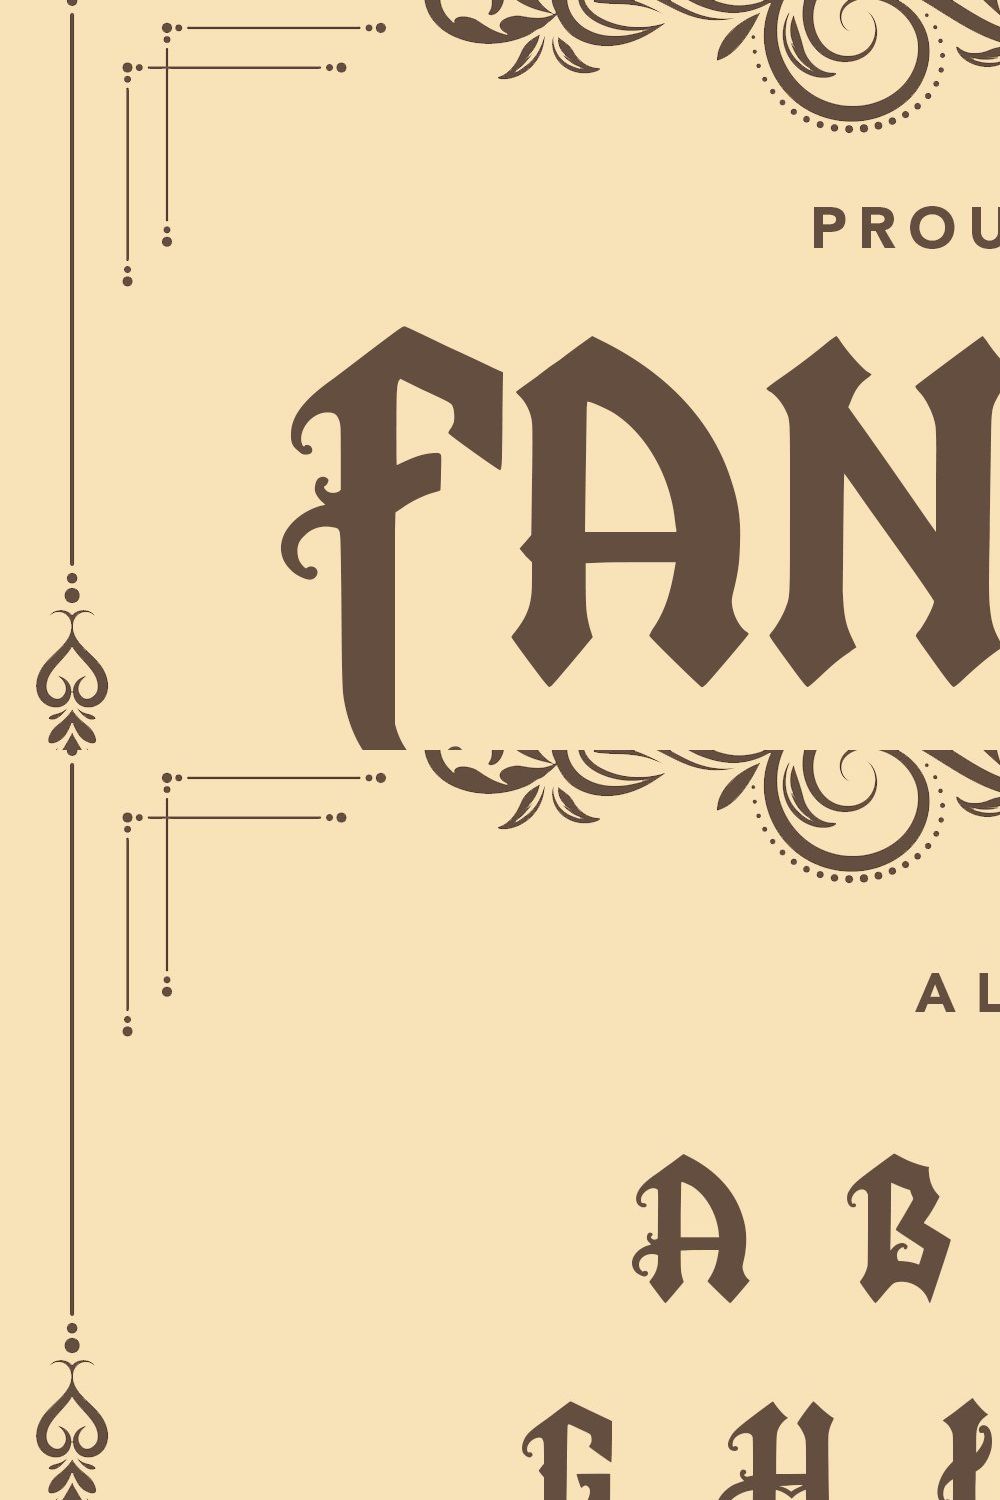 FantasySquad - Blackletter Font pinterest preview image.